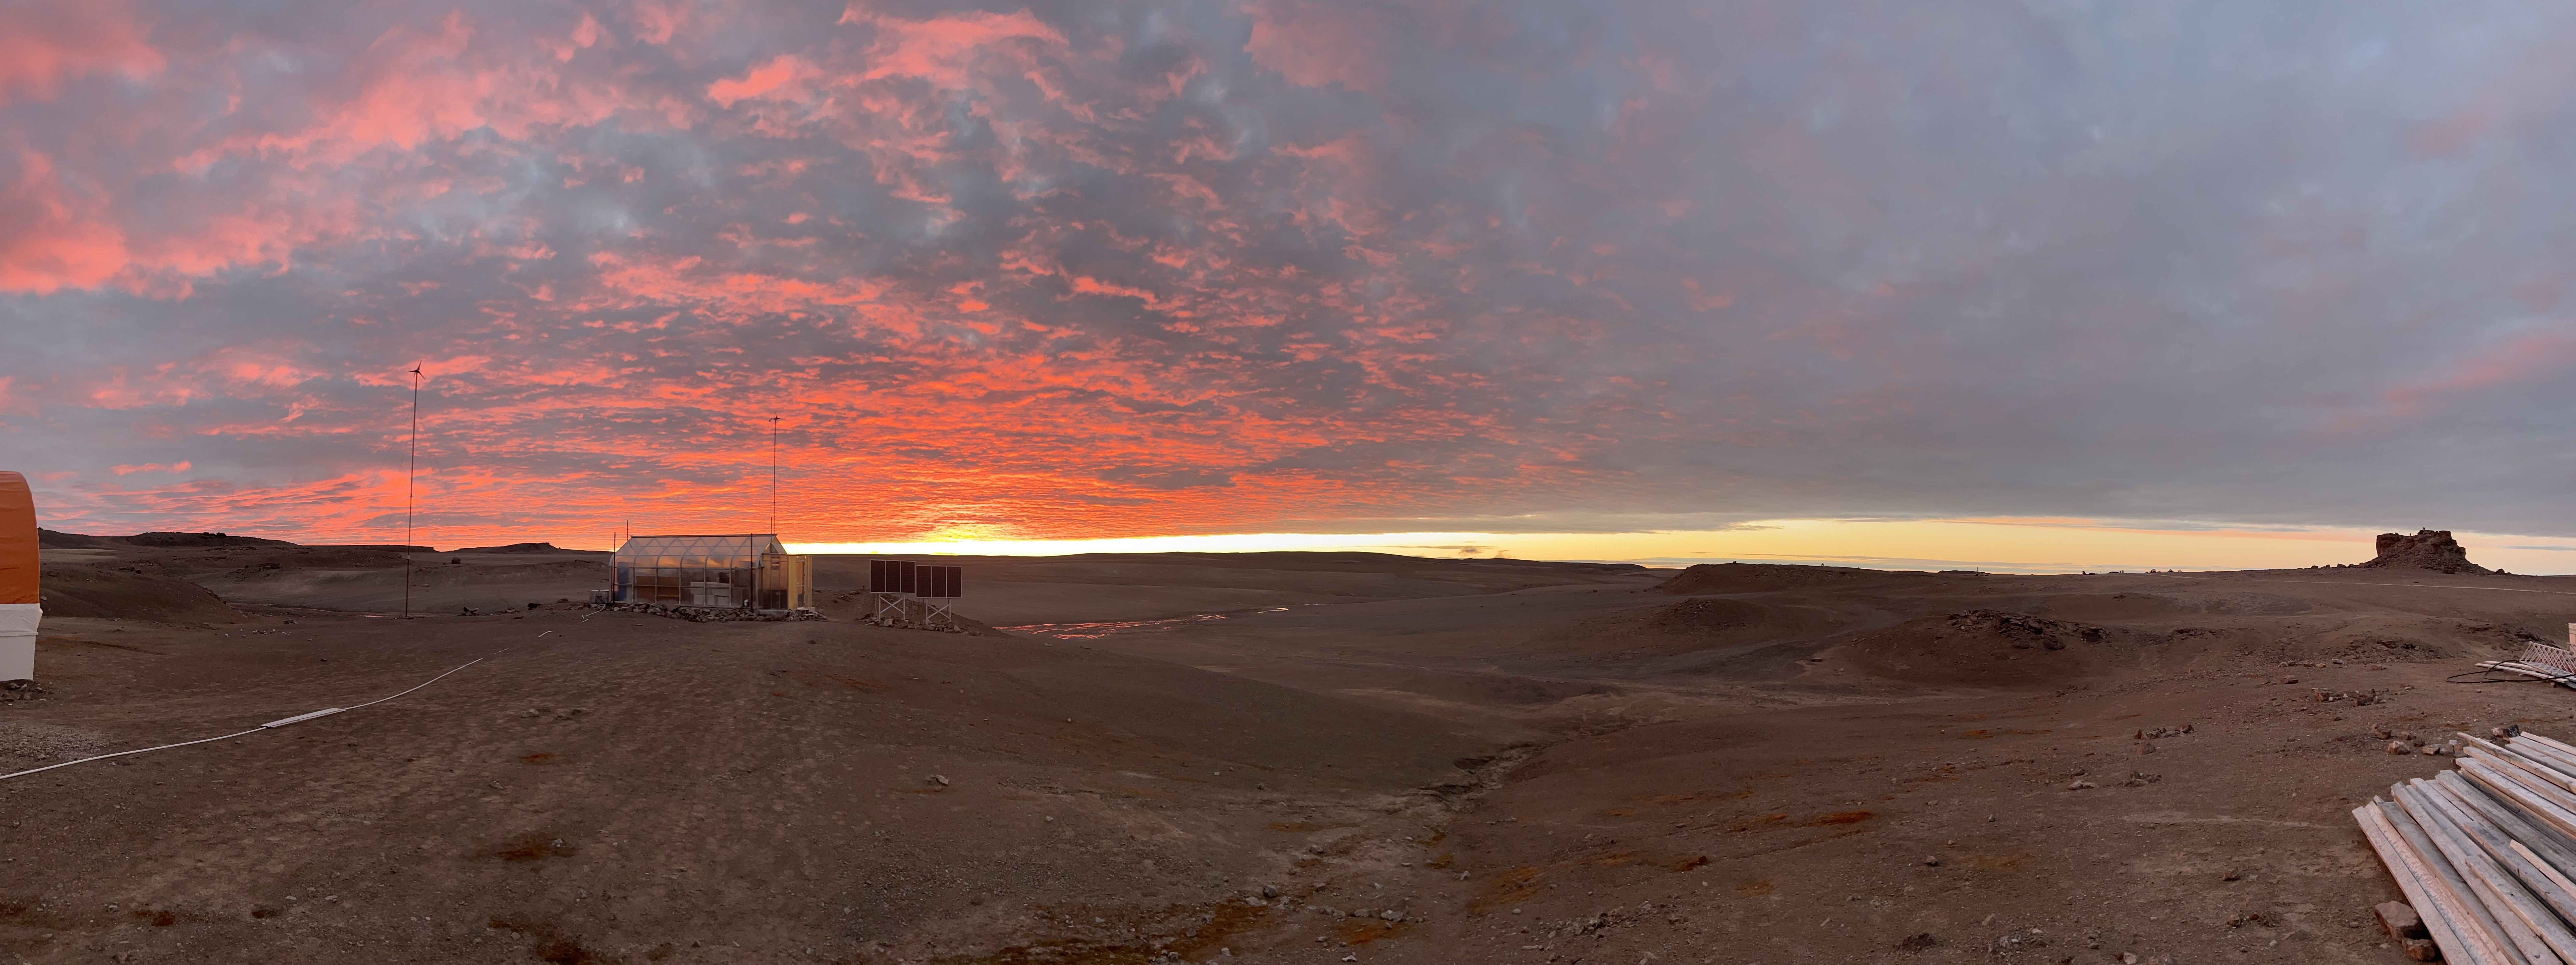 Ηλιοβασίλεμα στη βάση HPM, με το θερμοκήπιο στα αριστερά και το Fortress Rock στα δεξιά, τα μεσάνυχτα.